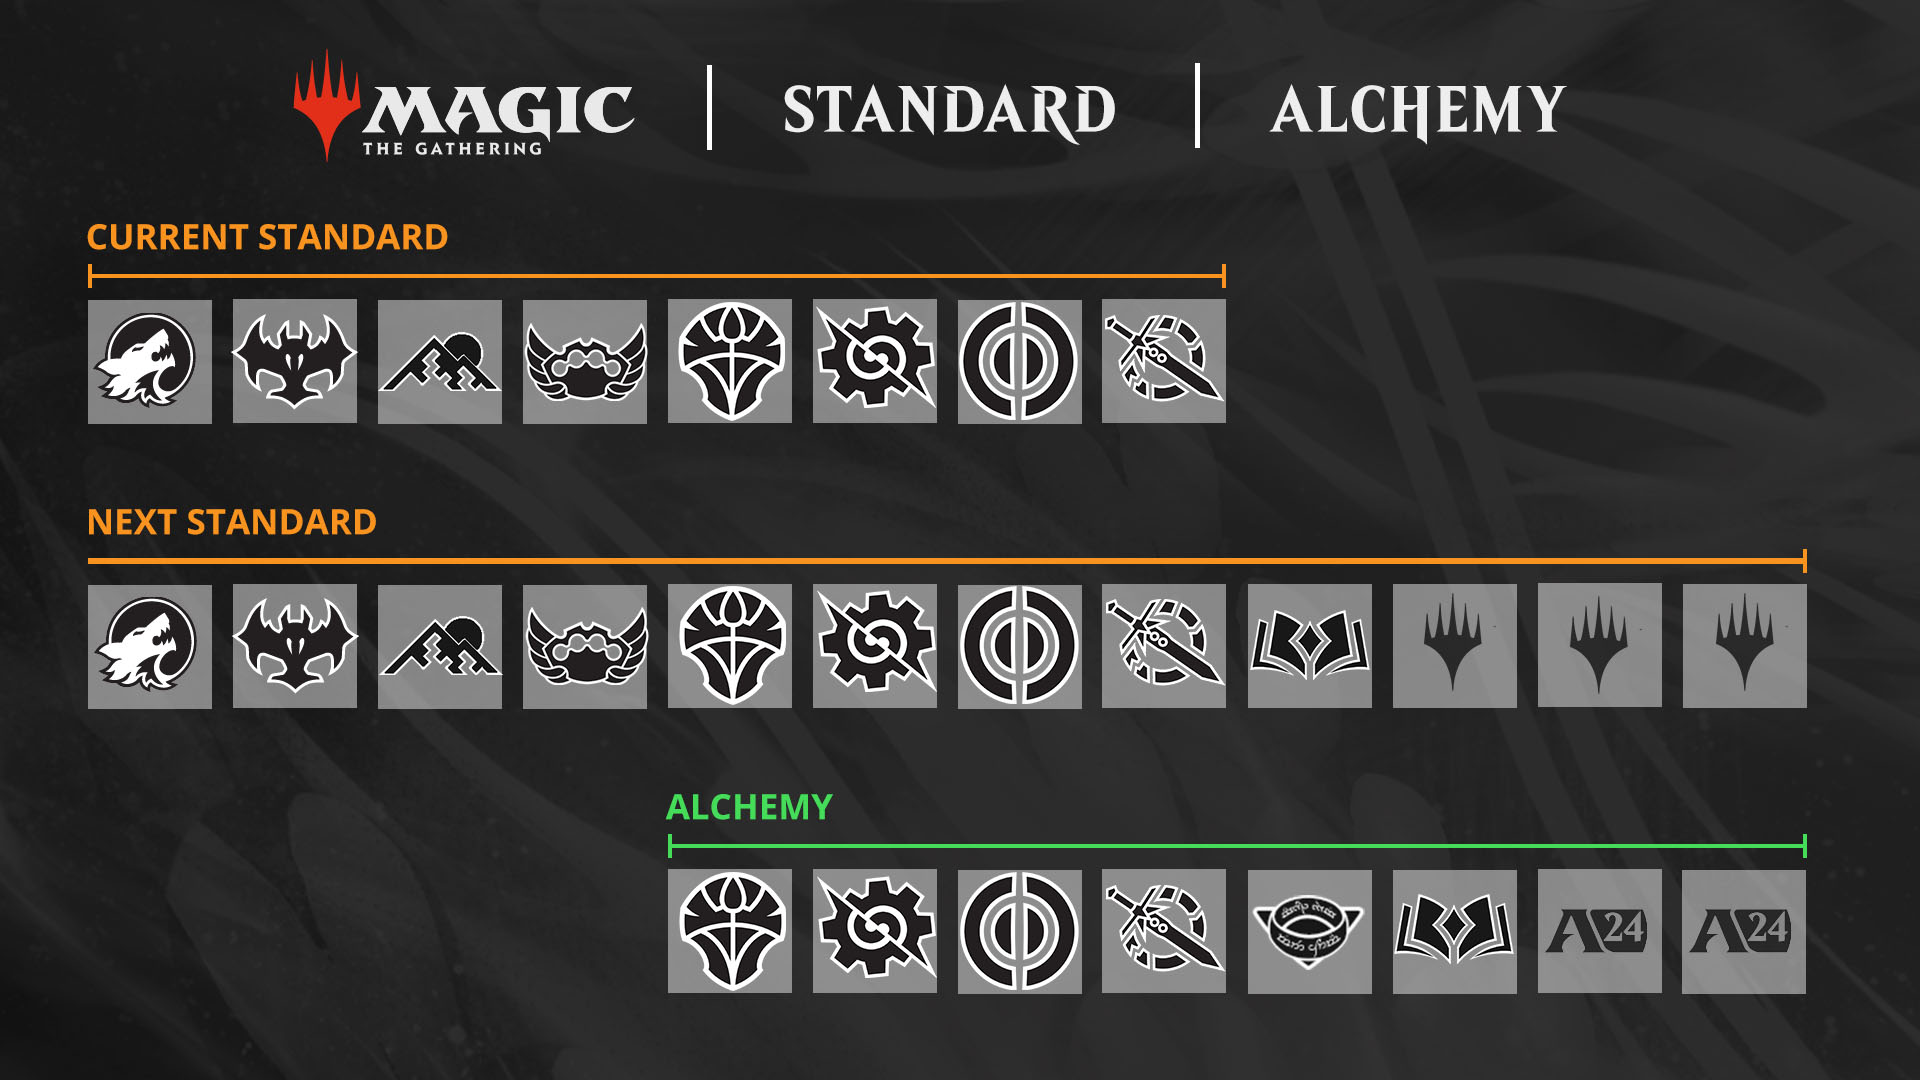 Des graphiques affichant les icônes des extensions qui entrent et quittent les formats Standard et Alchemy pour la nouvelle année de Magic qui débute en septembre, avec la sortie de l'extension Les friches d'Eldraine